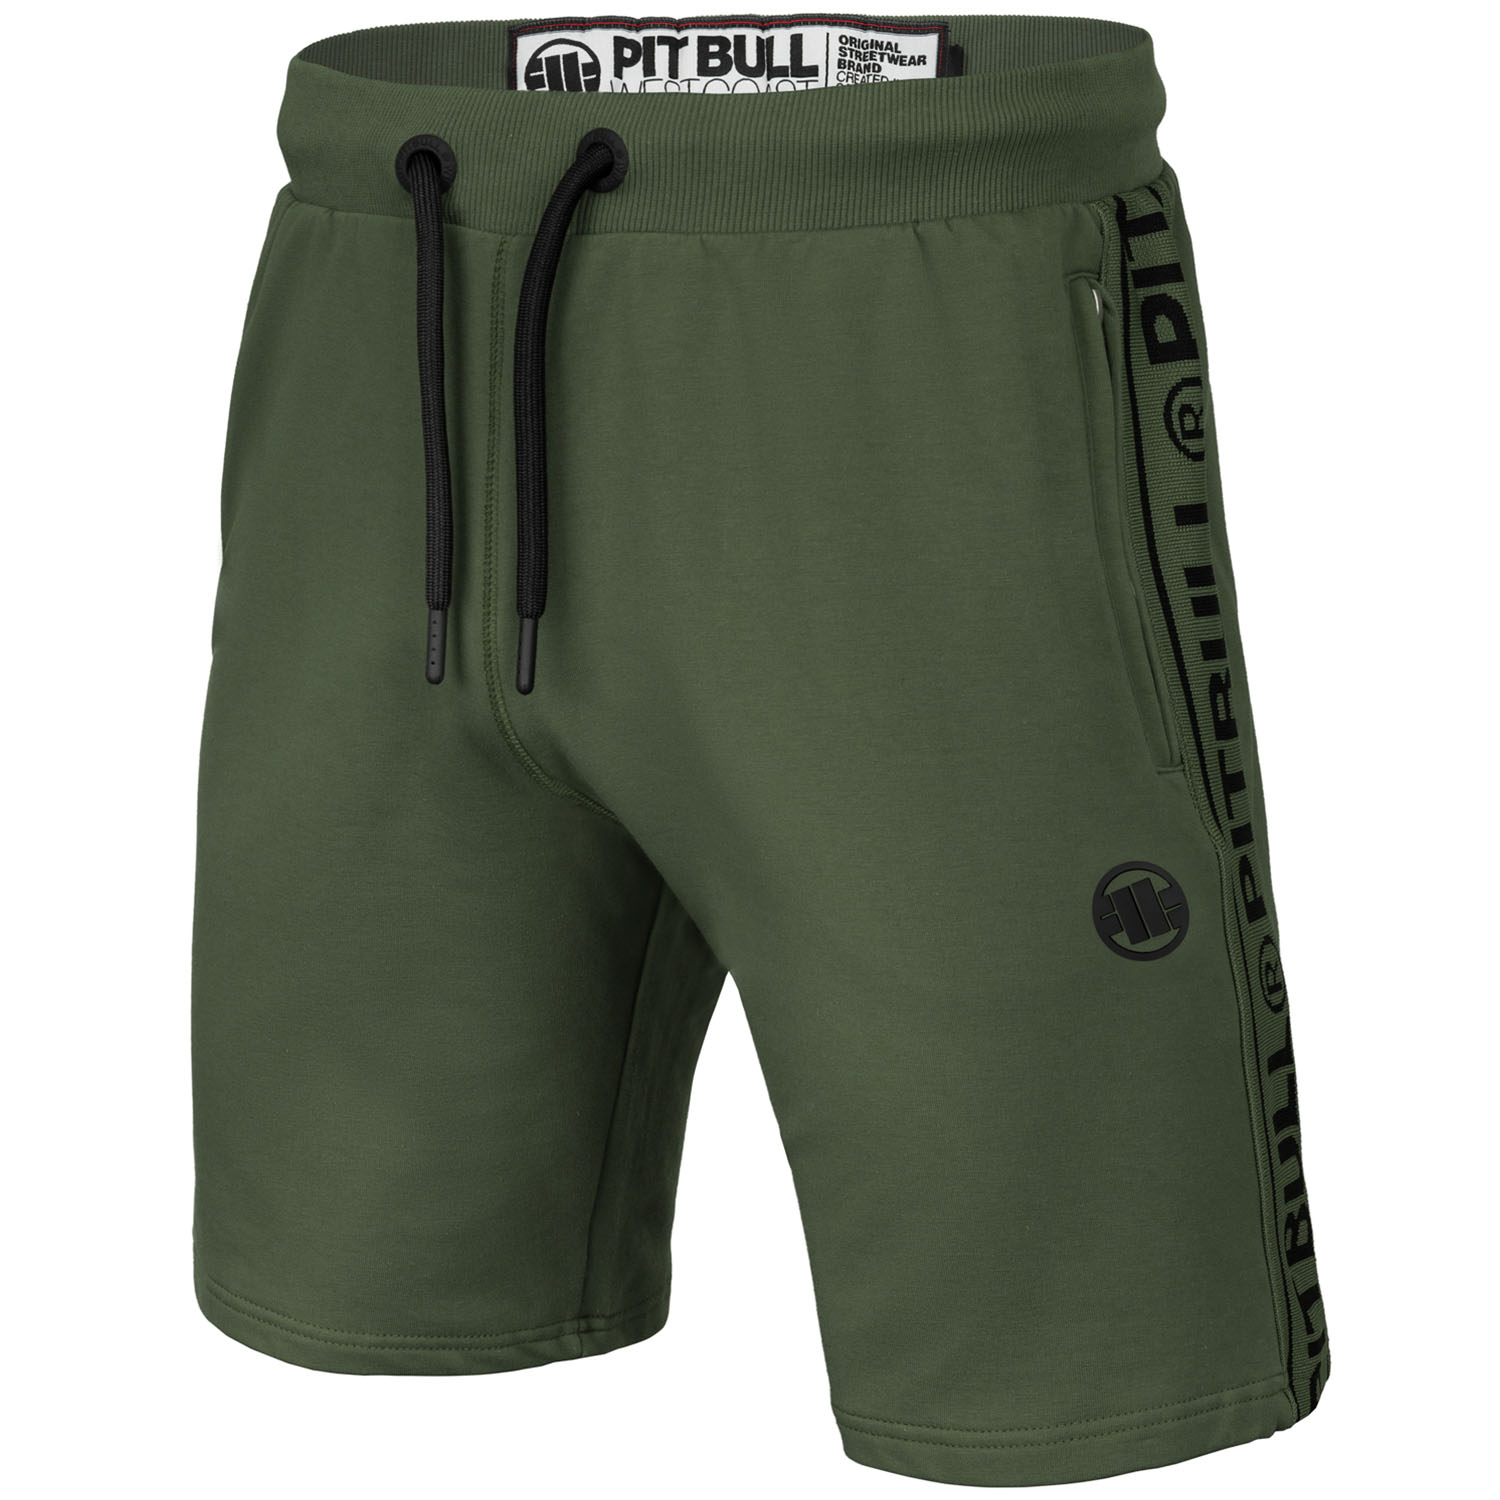 Pit Bull West Coast Shorts, Byron, olive